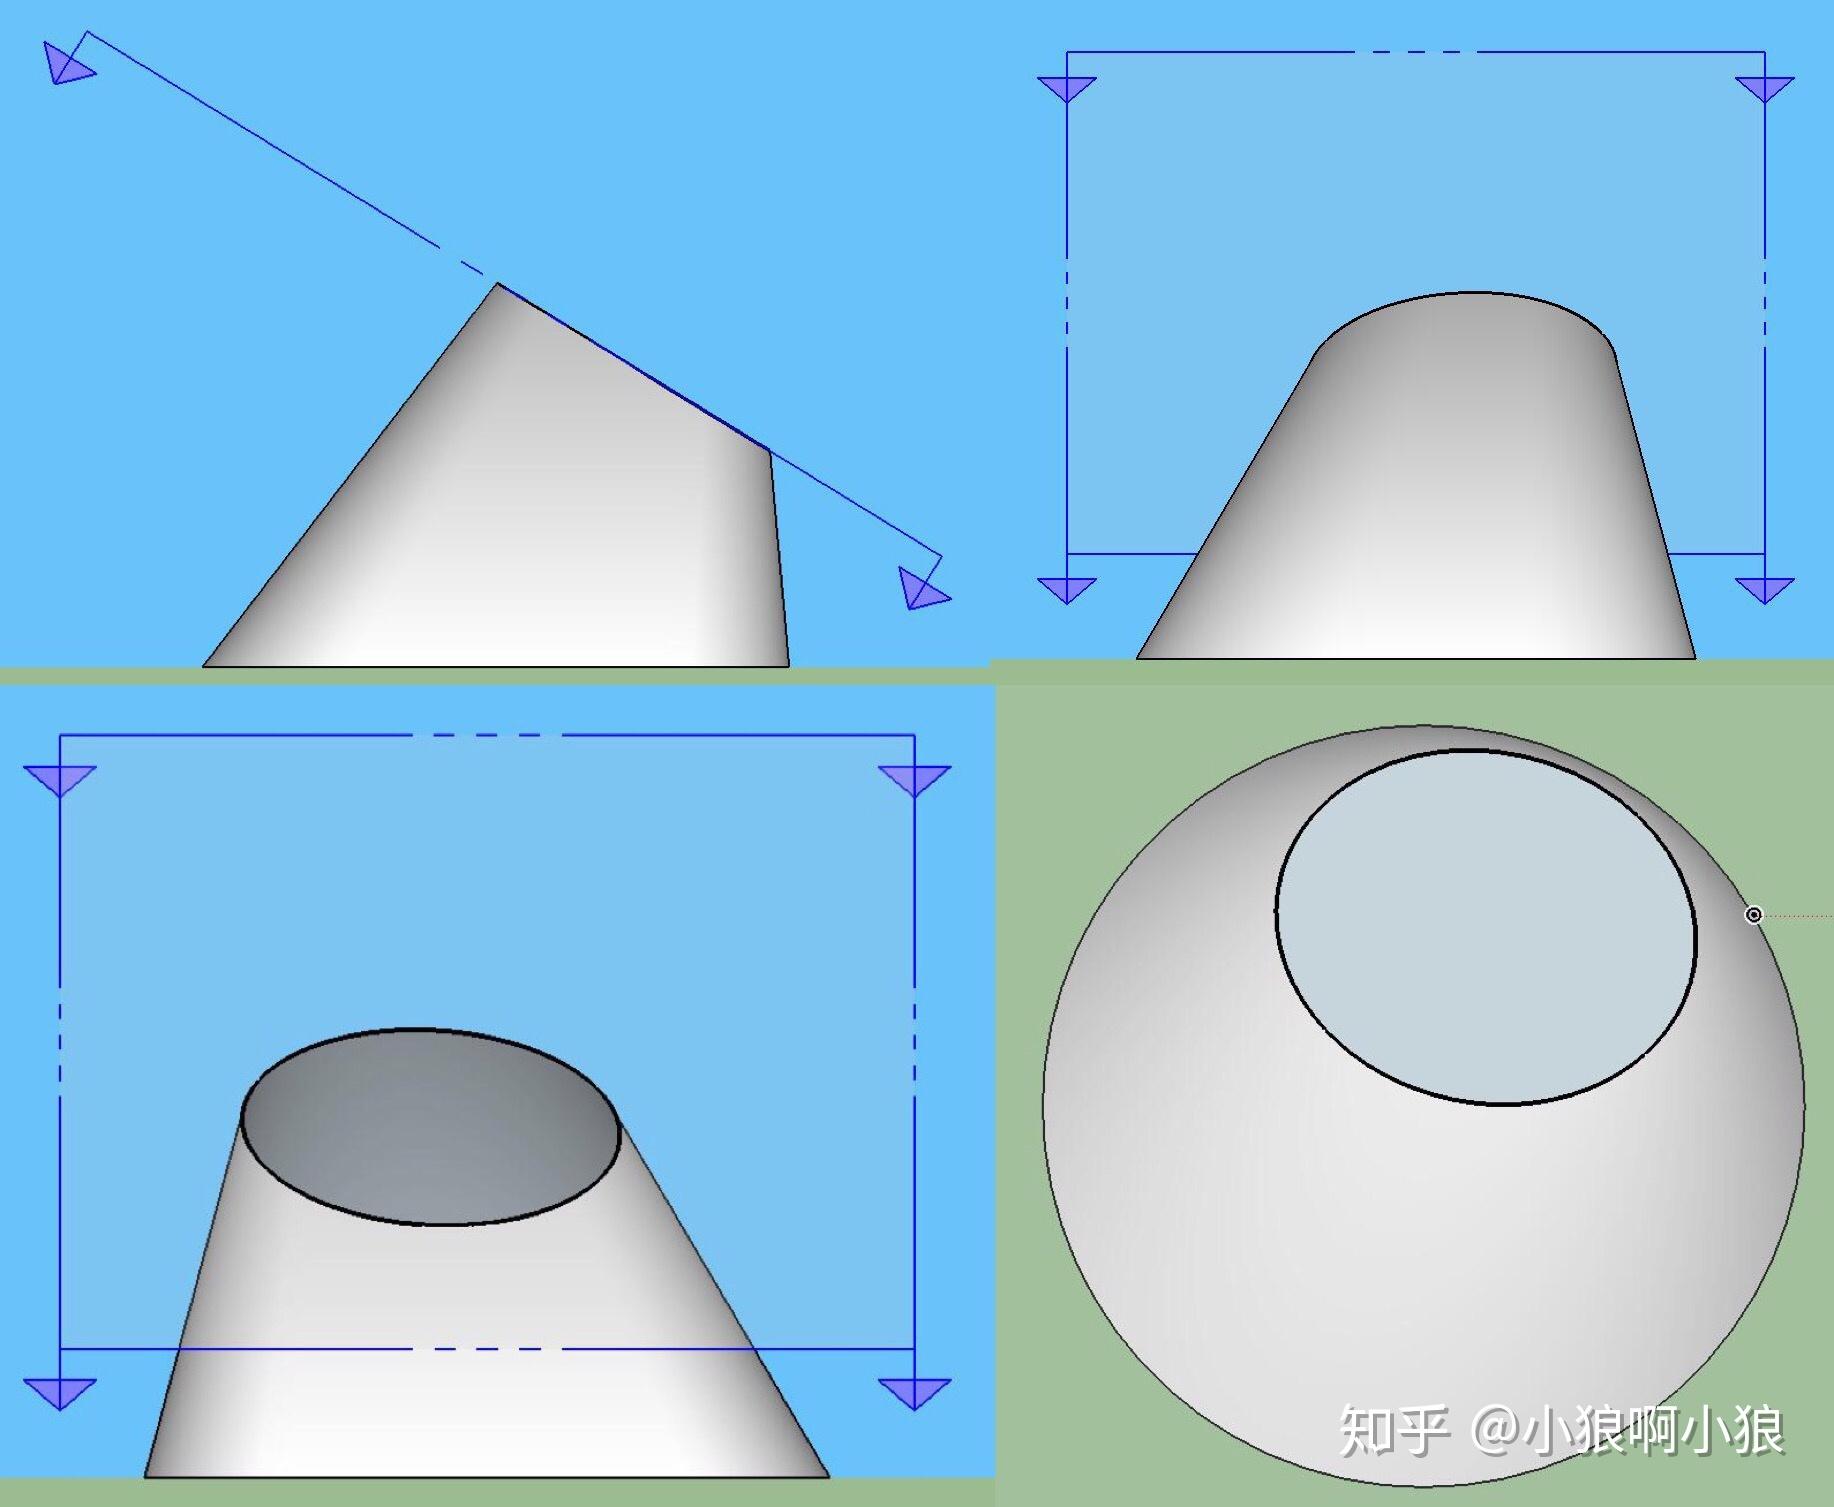 斜圆锥的斜截面是什么样的图形?